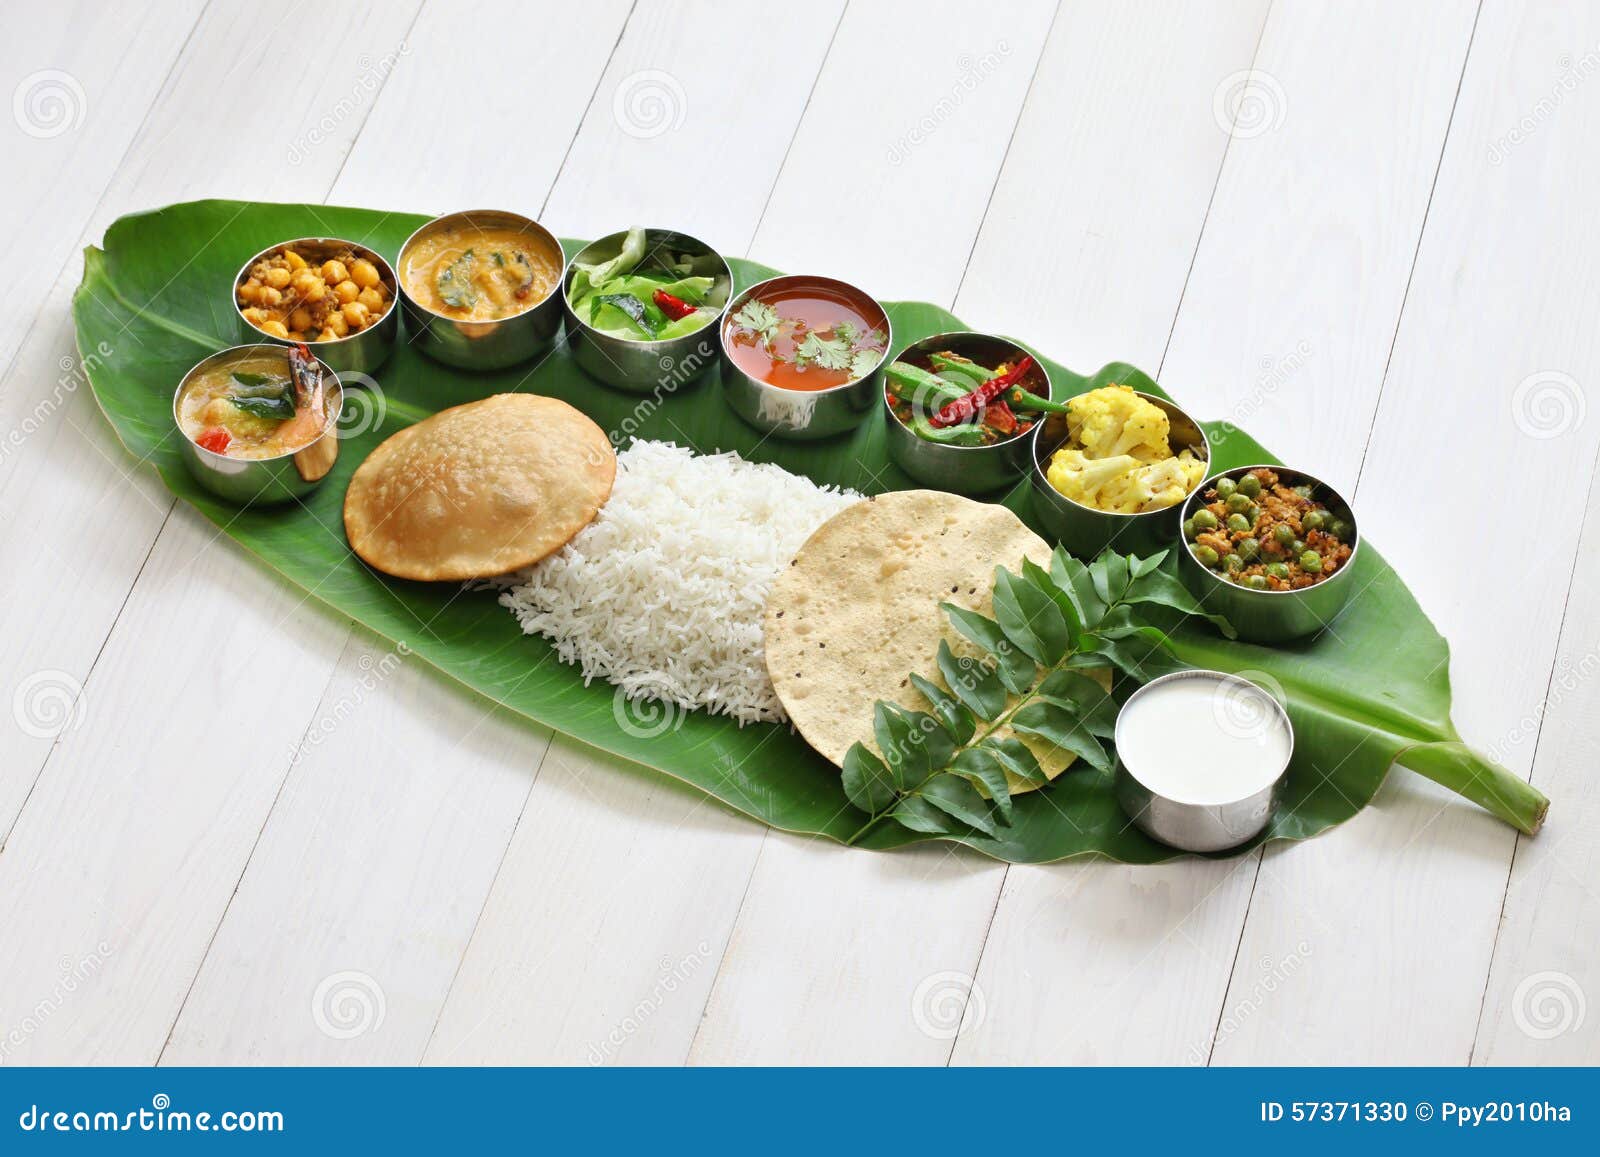 south indian meals served on banana leaf